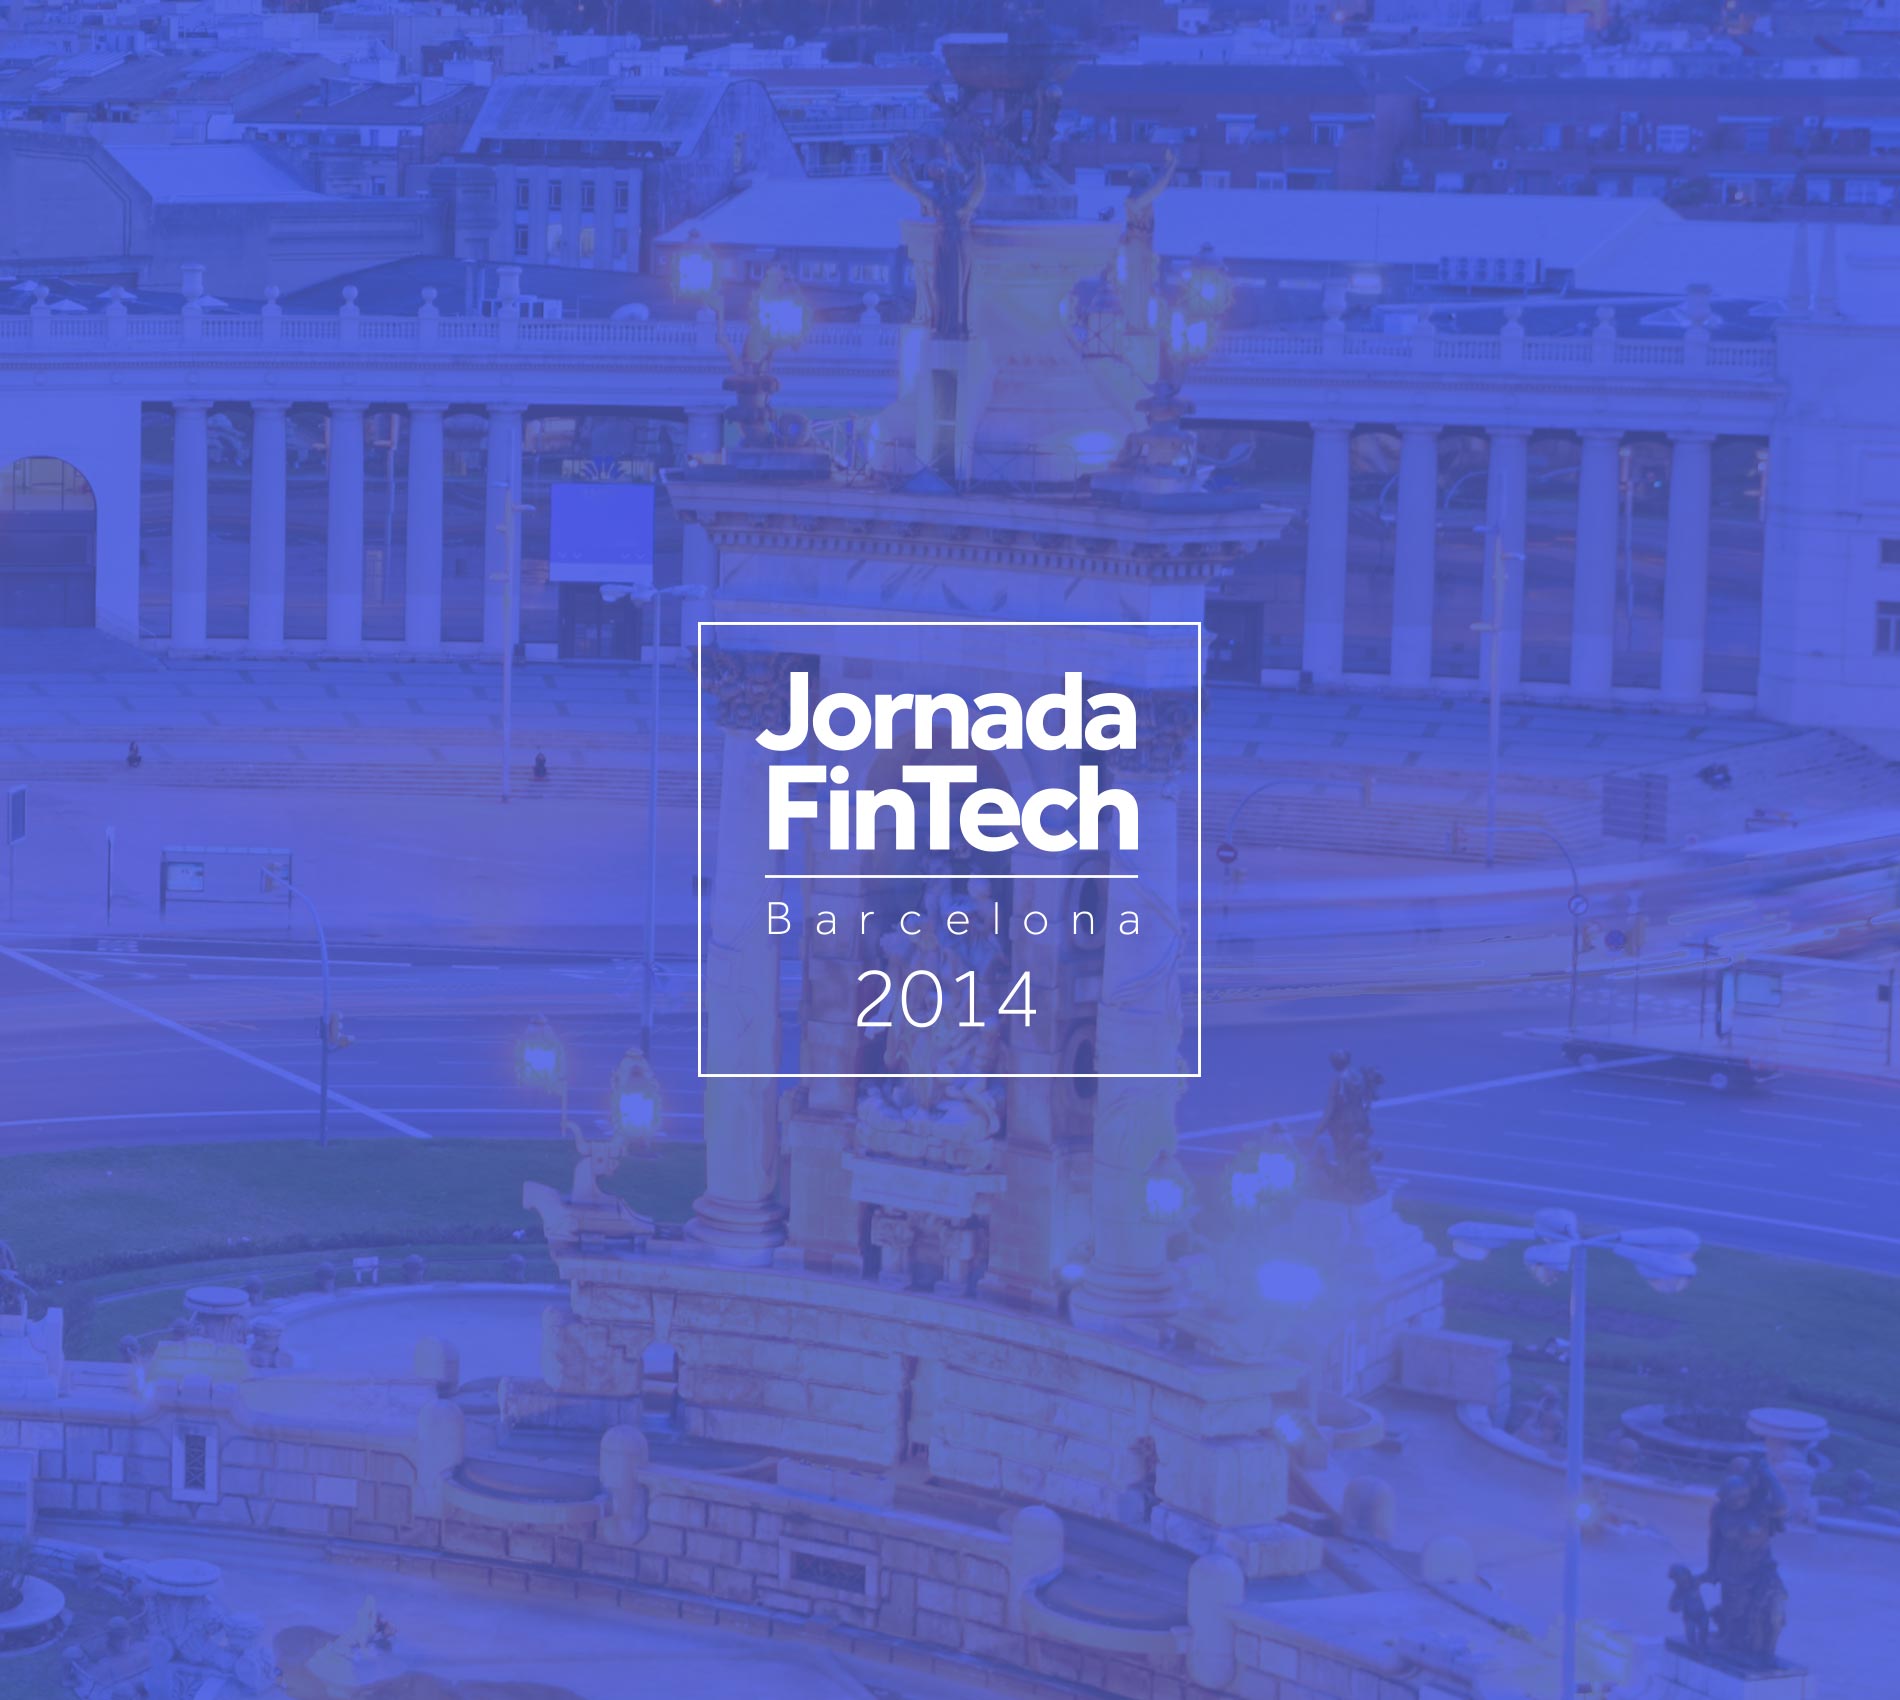 Jornada FinTech 2014, Barcelona